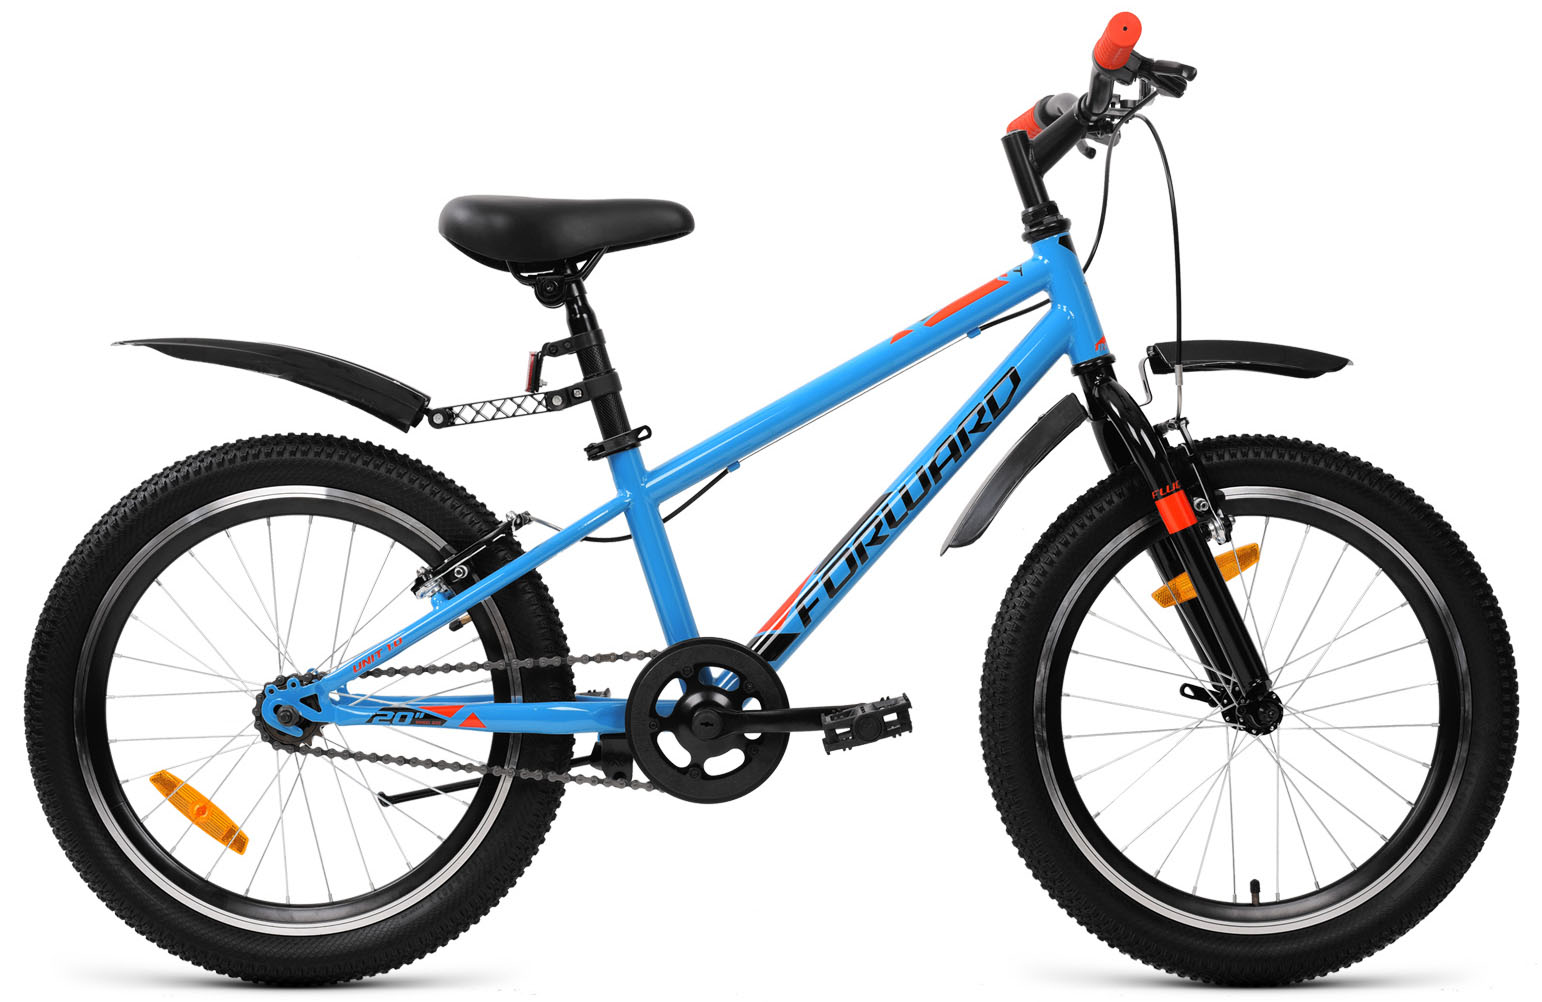  Отзывы о Детском велосипеде Forward Unit 20 1.0 2019